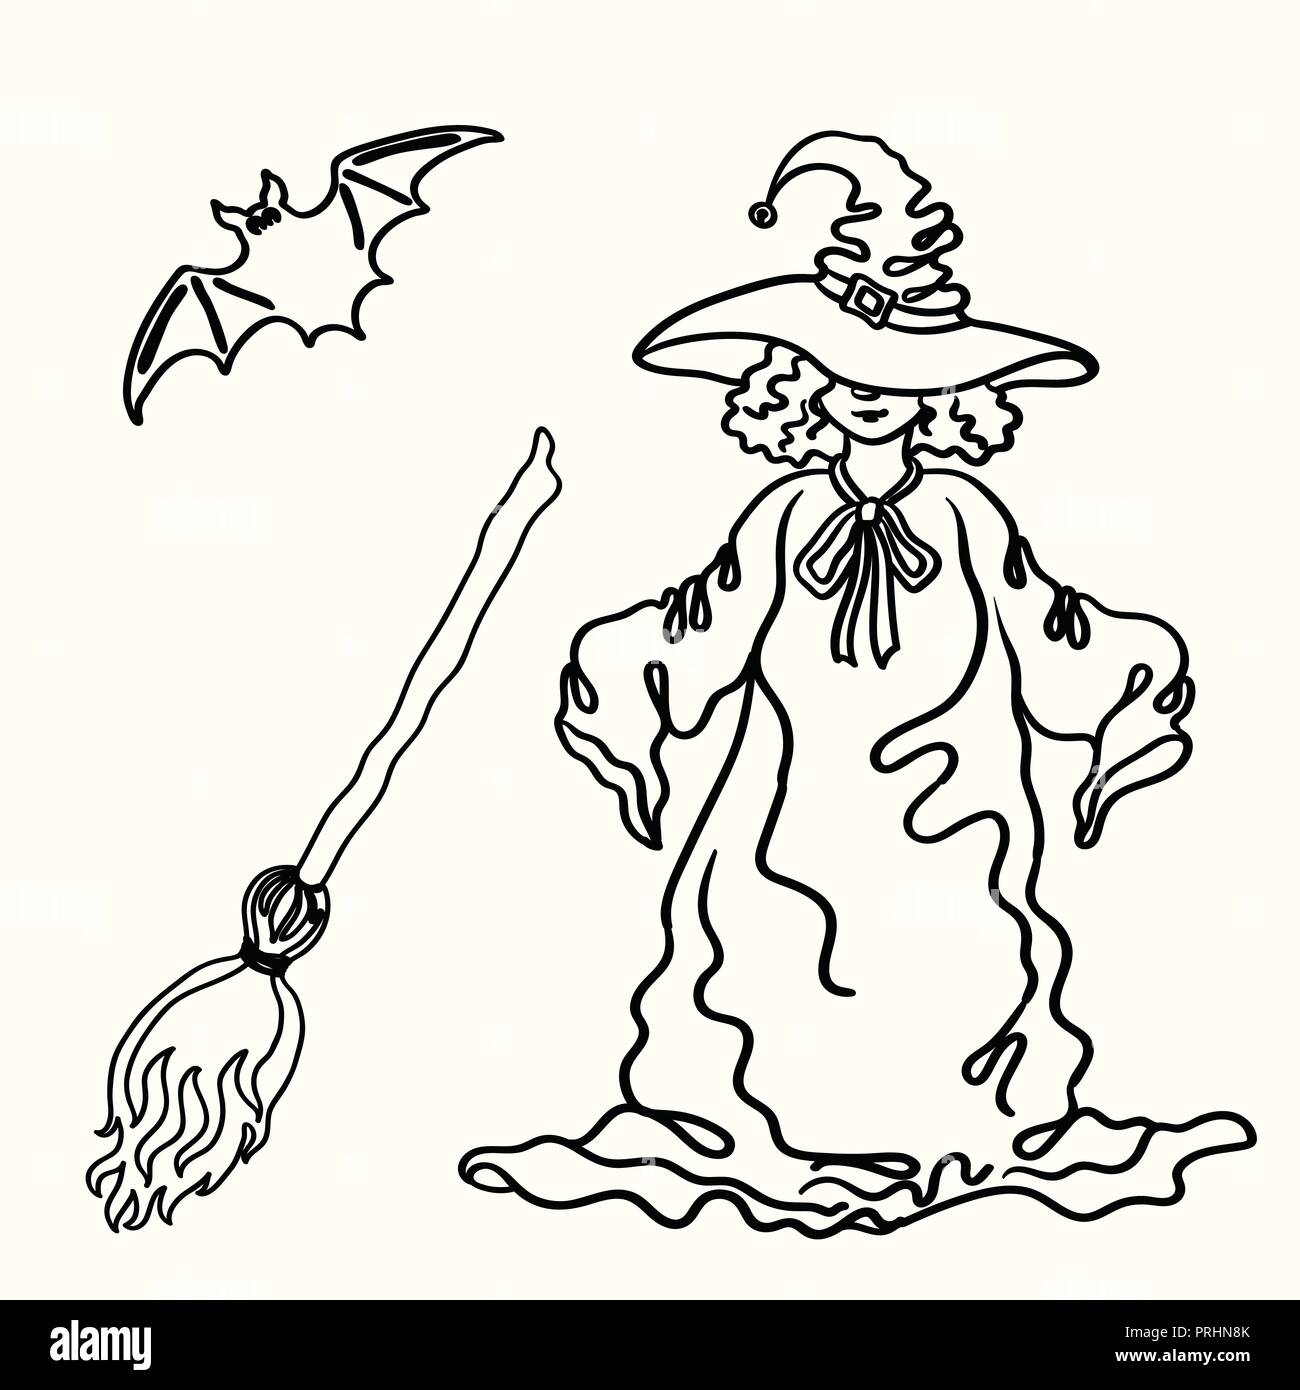 Vettore di Cartoon outline Witch Halloween, ginestra, bat silhouette isolati su sfondo bianco Illustrazione Vettoriale